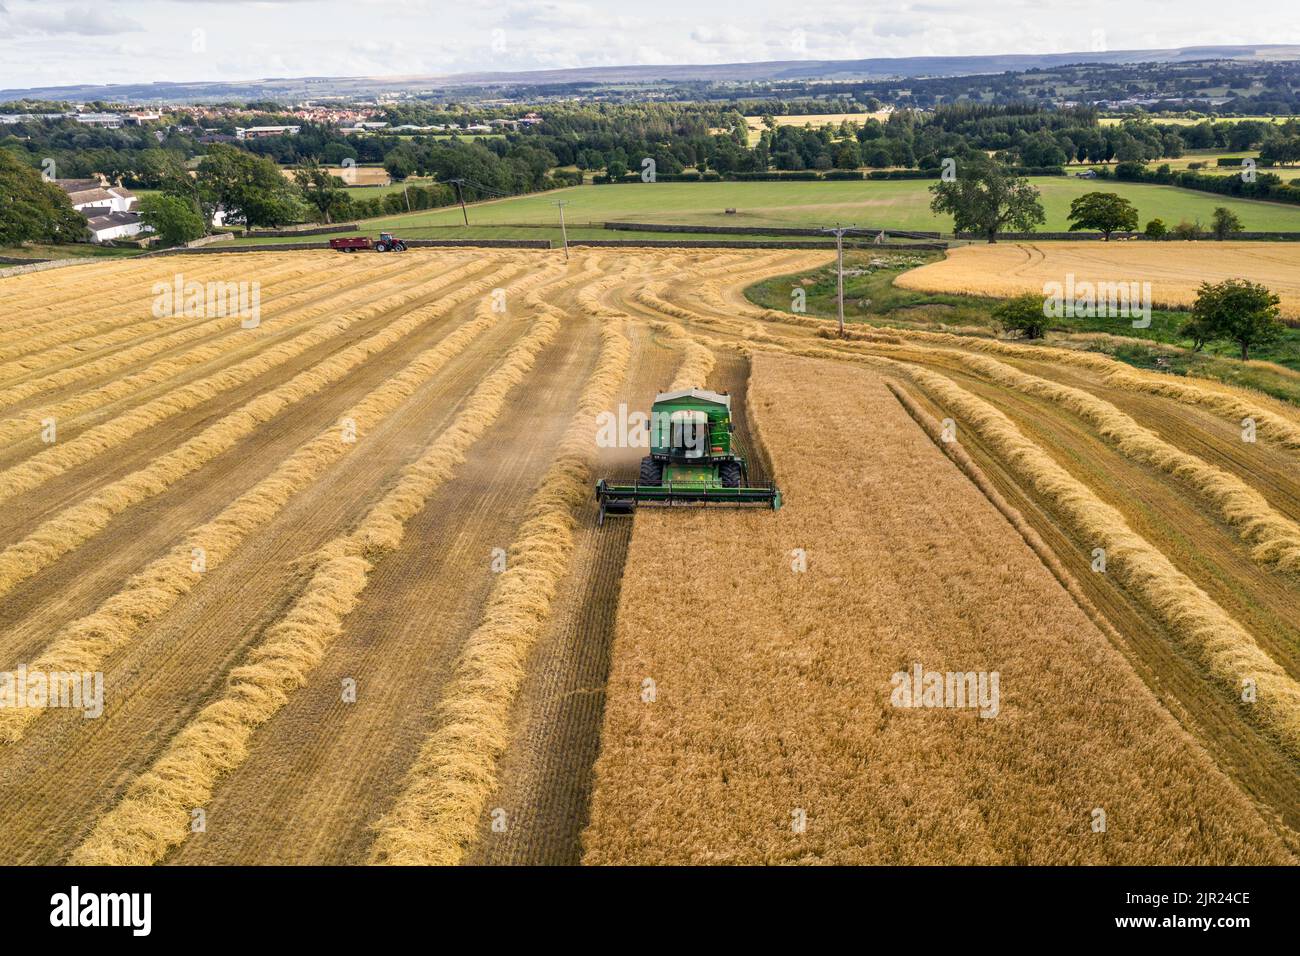 Mietitrebbia per la raccolta di cereali, Inghilterra settentrionale, Regno Unito Foto Stock